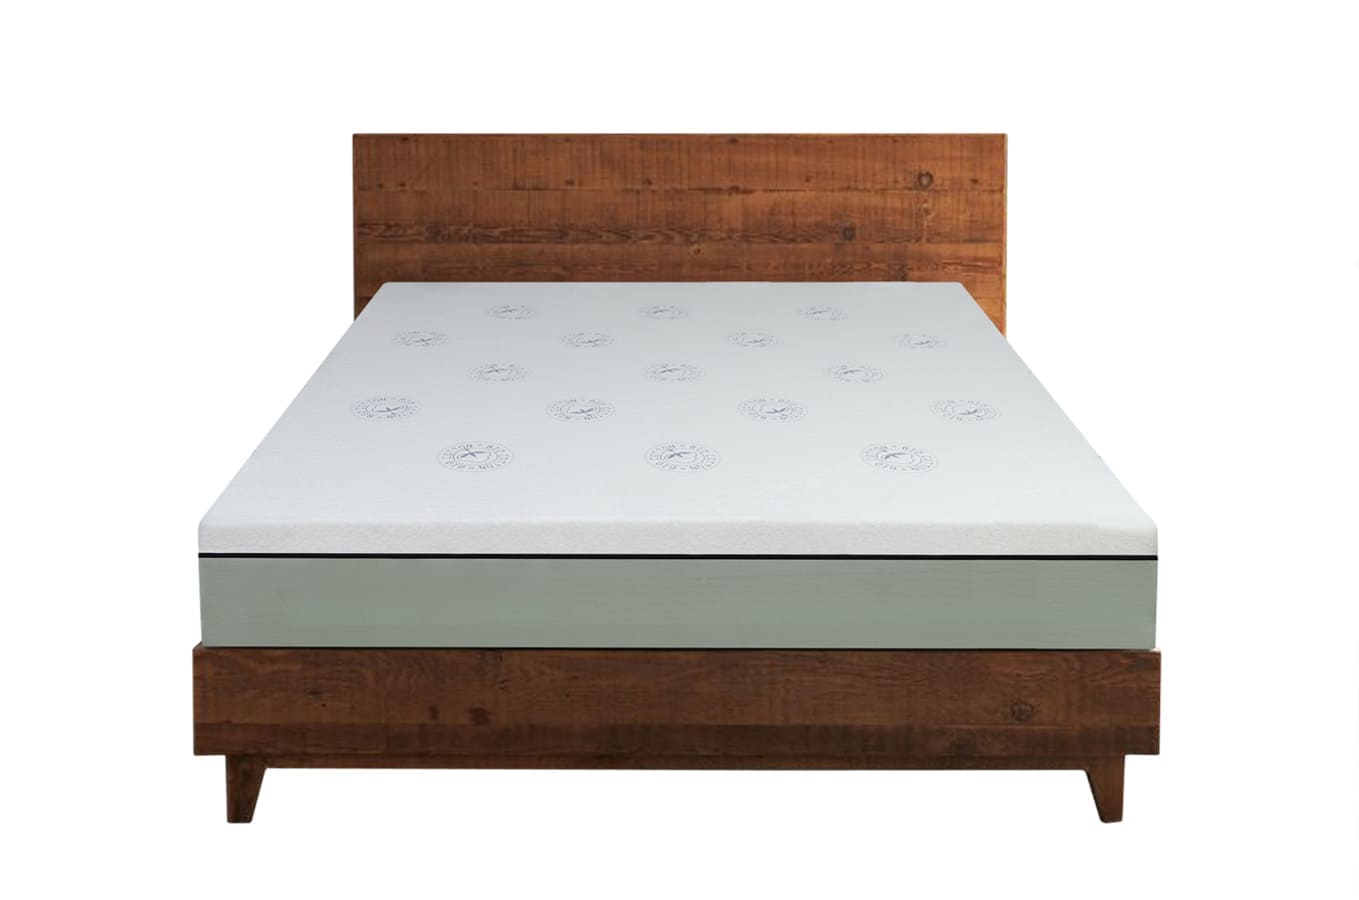 Small size natural latex dunlop mattress